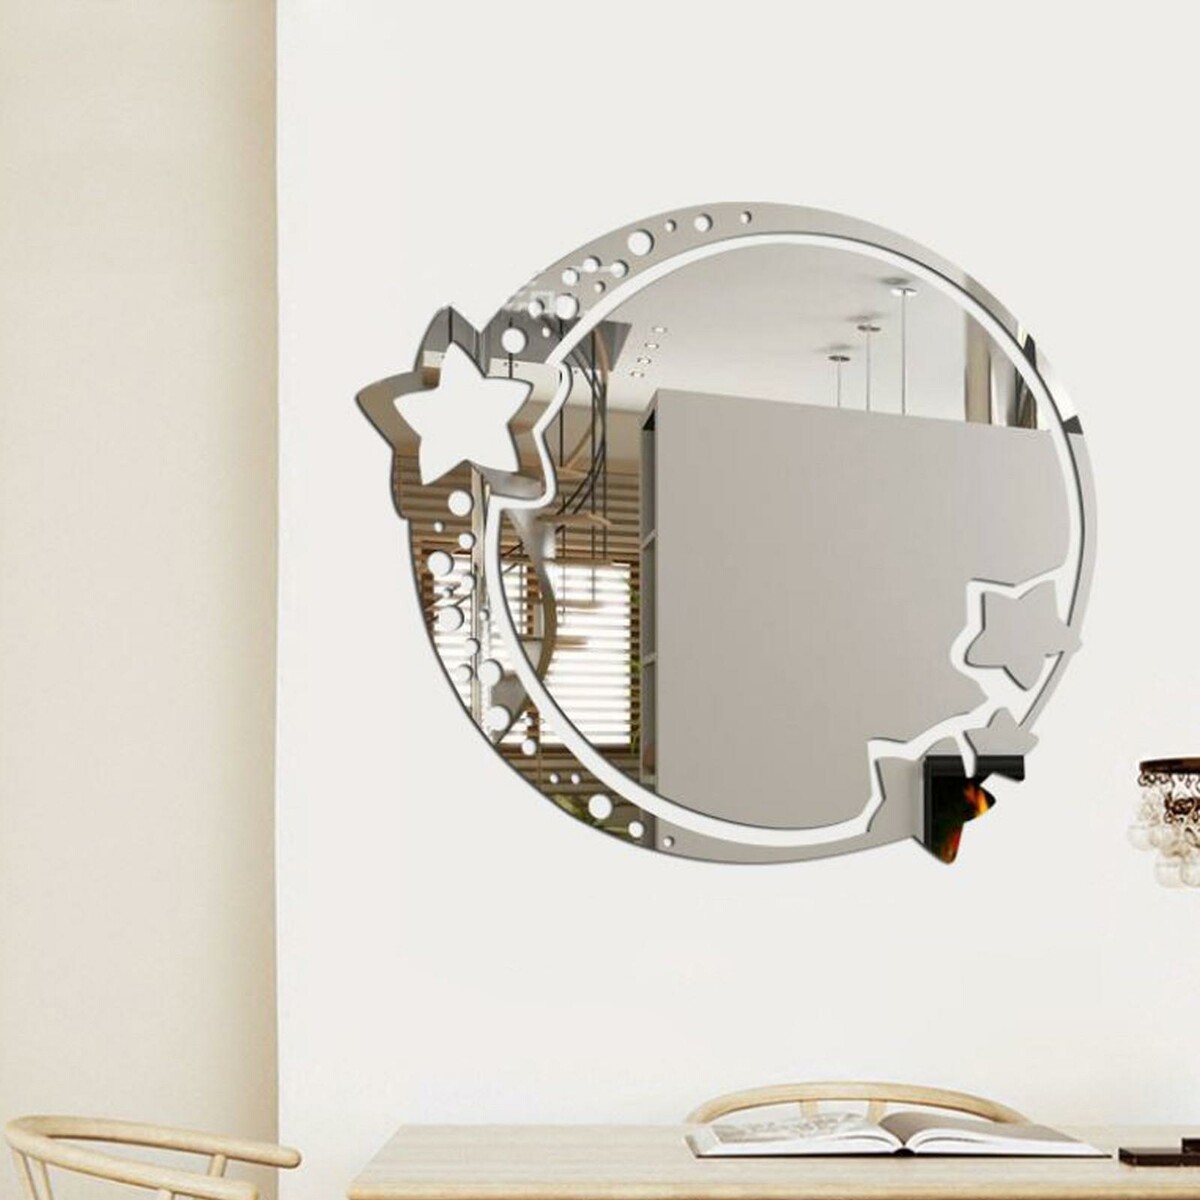 Зеркало настенное, наклейки интерьерные, зеркальные, декор на стену, панно 22 х 19 см зеркало настольное круг на подставке двустороннее с увеличением d зеркальной поверхности 12 5 см прозрачный